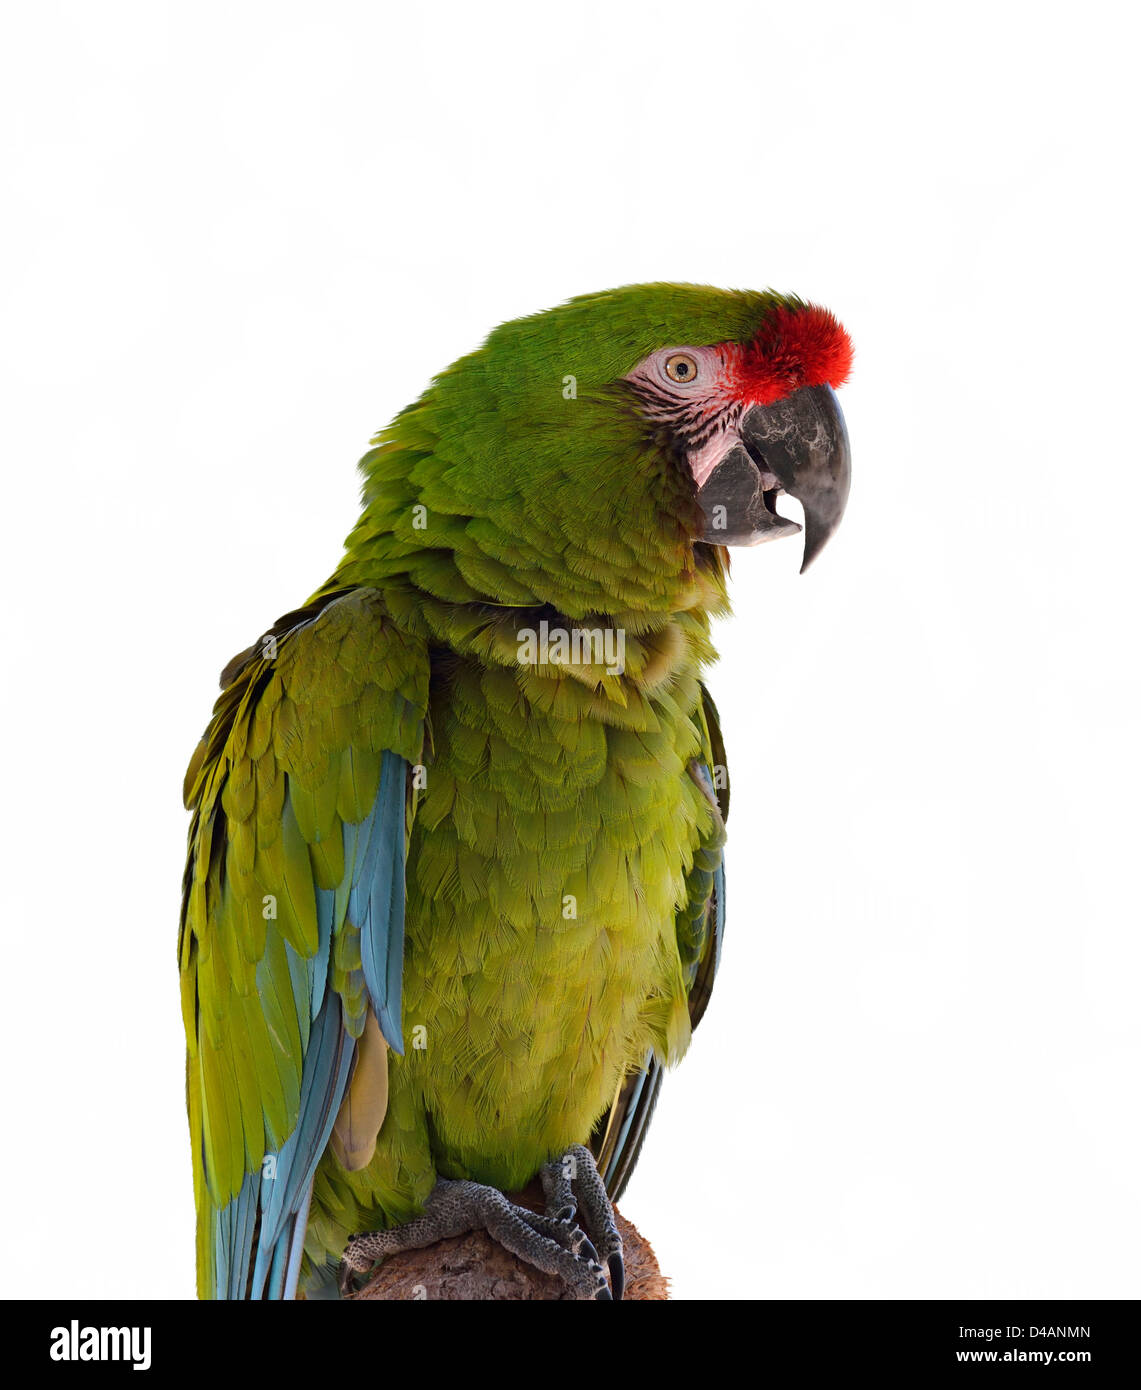 Bunte grüne Papagei Ara auf einem Ast Stockfoto